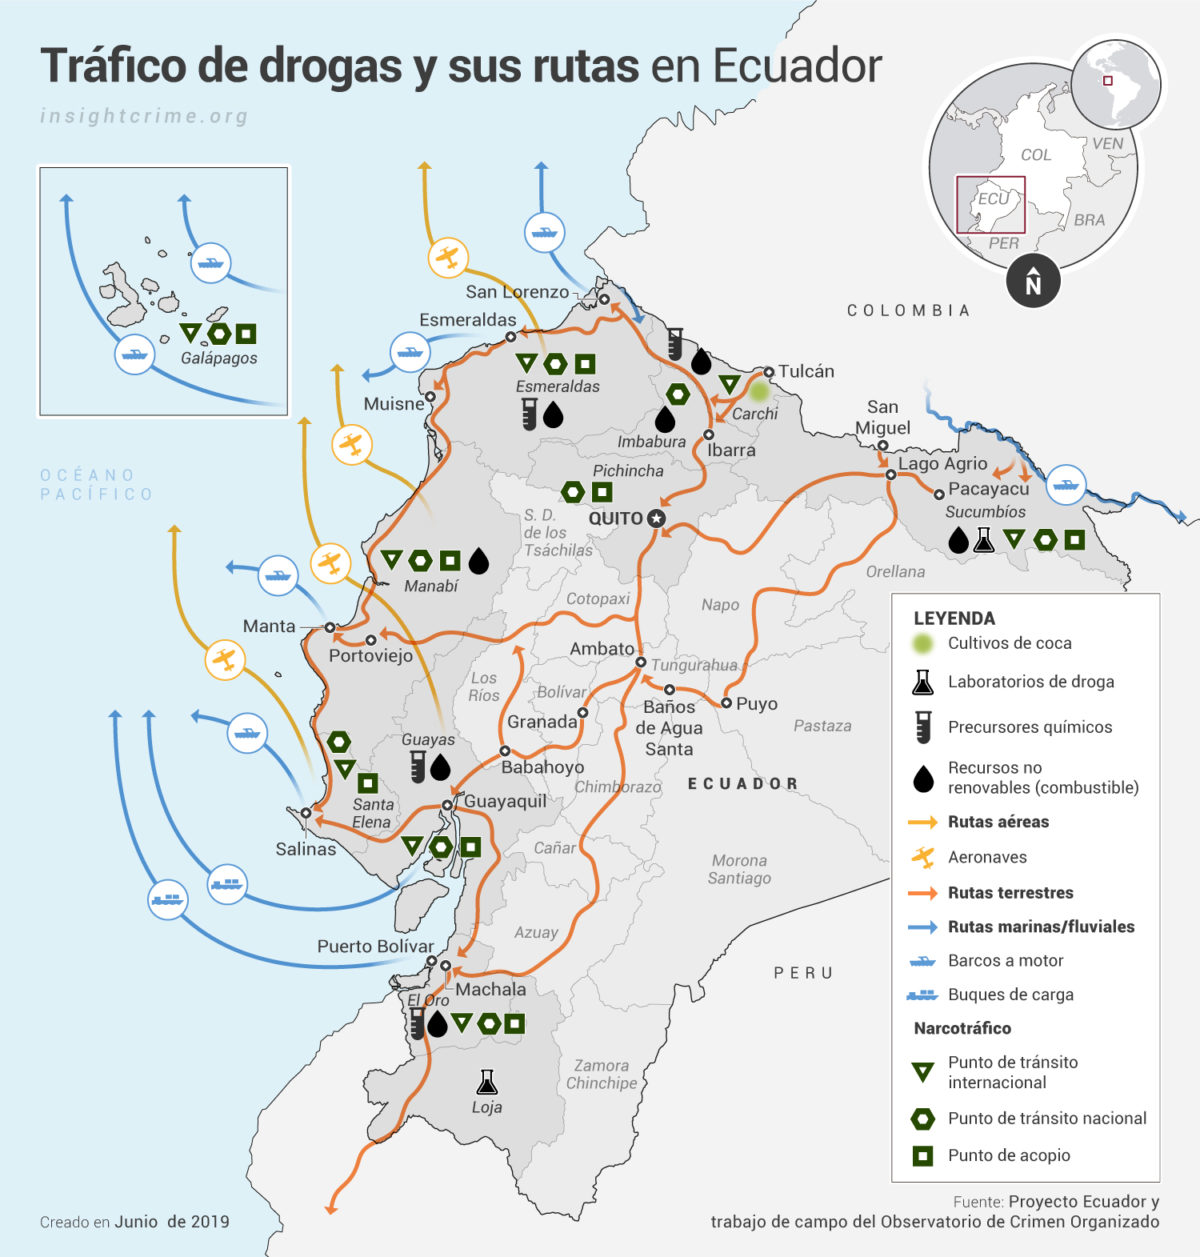 Ecuador Rutas y economias criminales Map InSight Crime 14 06 2019